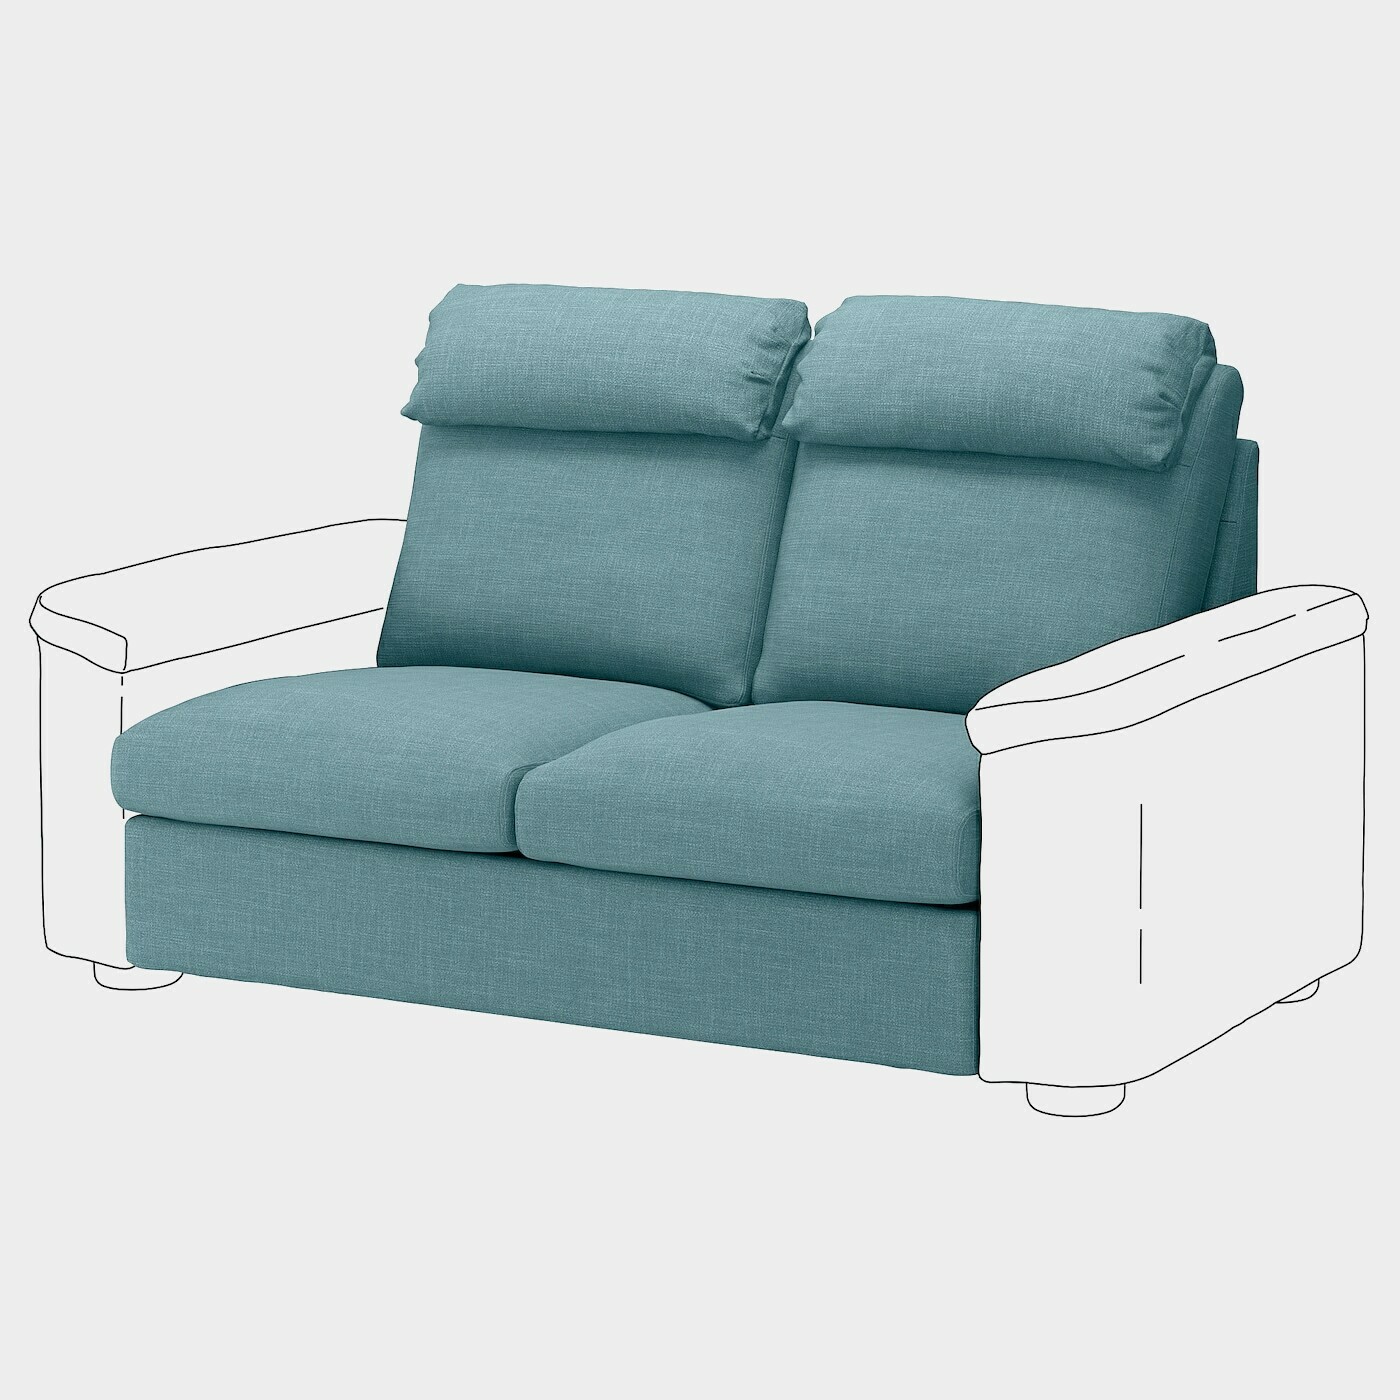 LIDHULT Bezug 2er-Bettsofaelement  - extra Bezüge - Möbel Ideen für dein Zuhause von Home Trends. Möbel Trends von Social Media Influencer für dein Skandi Zuhause.